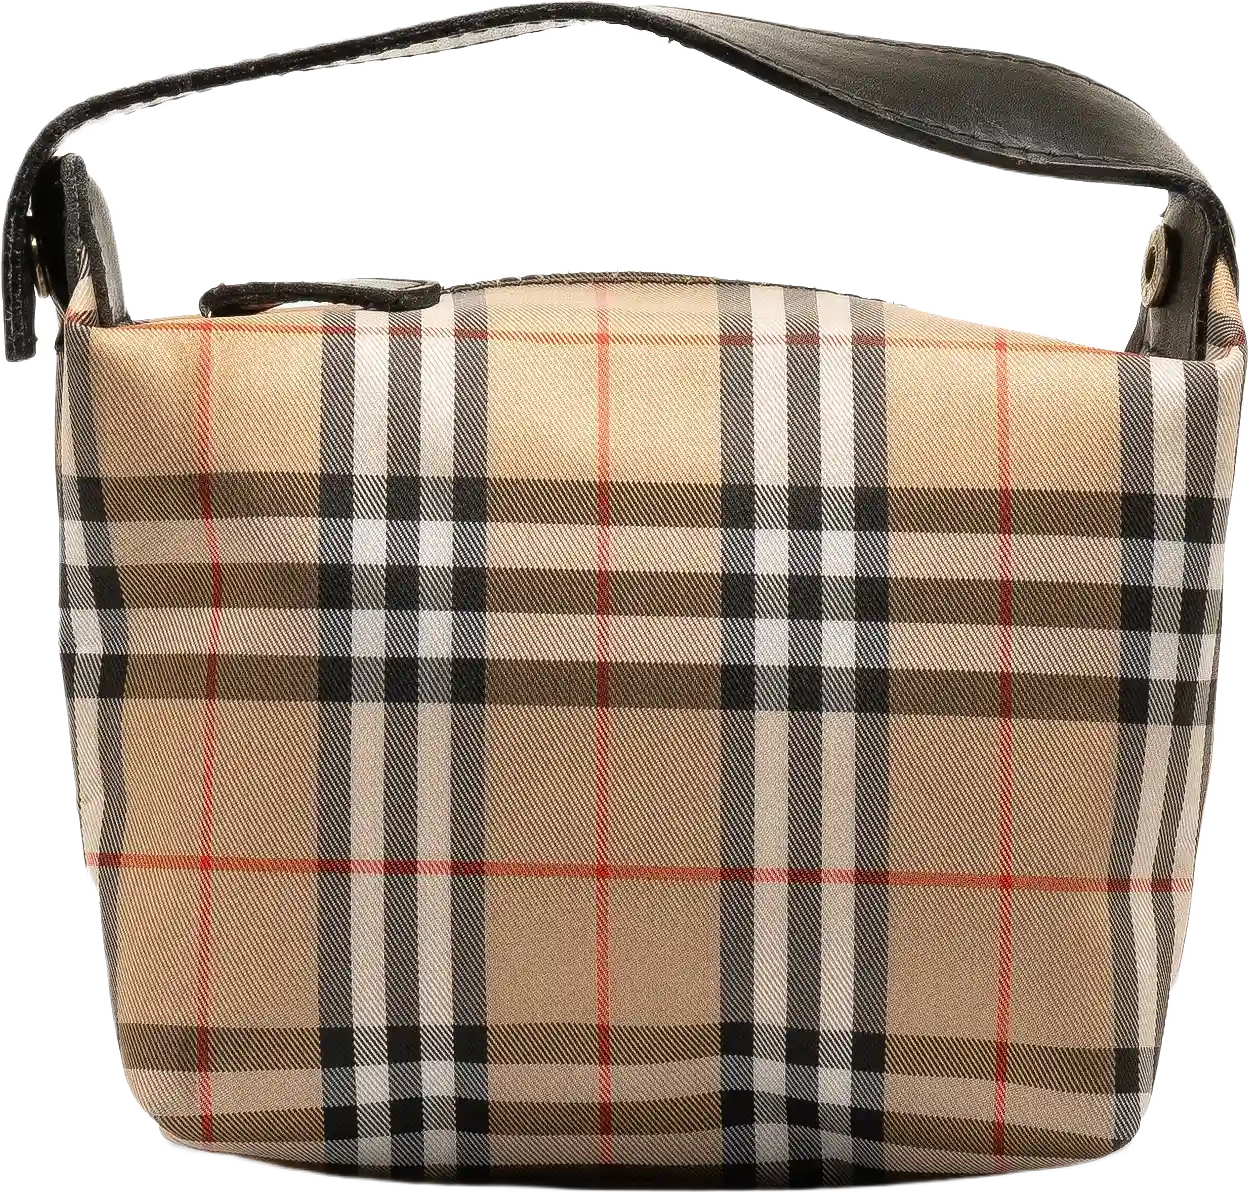 Burberry Mini House Check Handbag